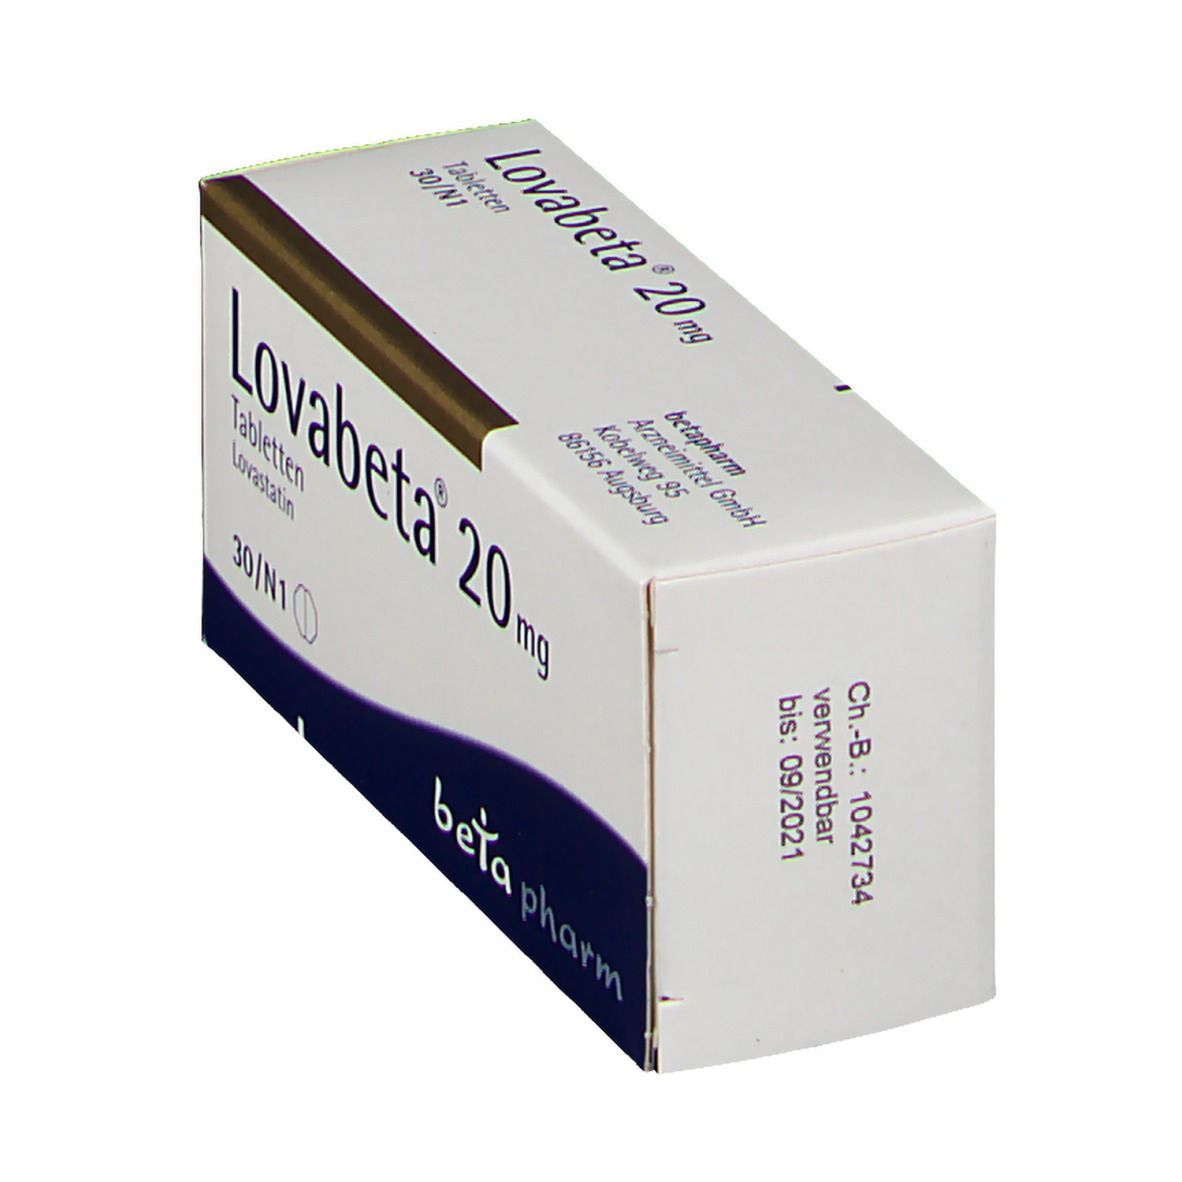 Lovabeta® 20 mg